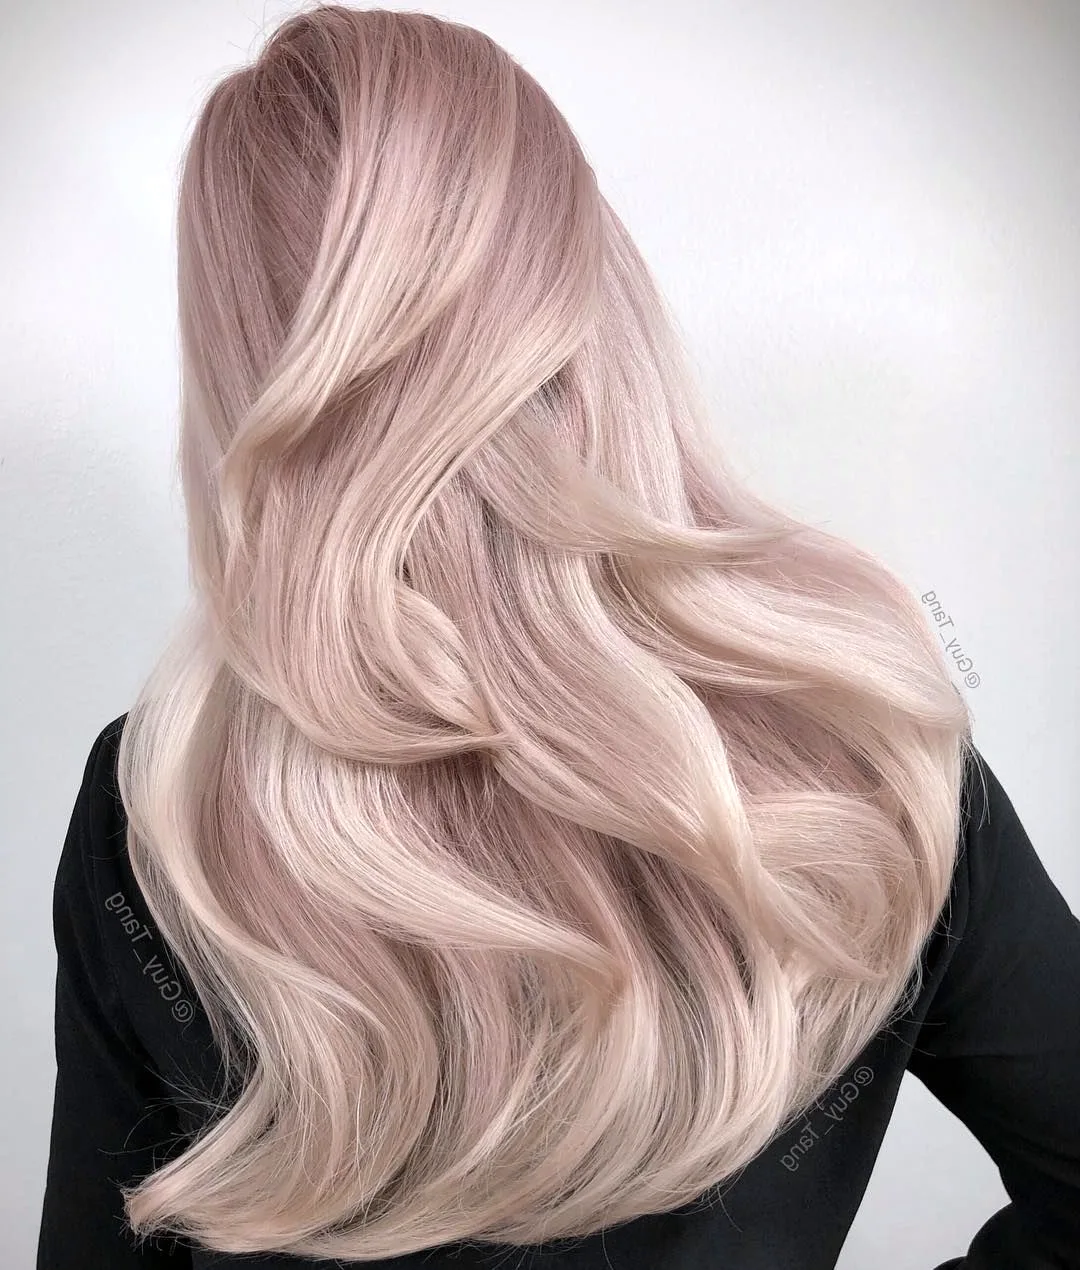 Жемчужно розовый цвет волос